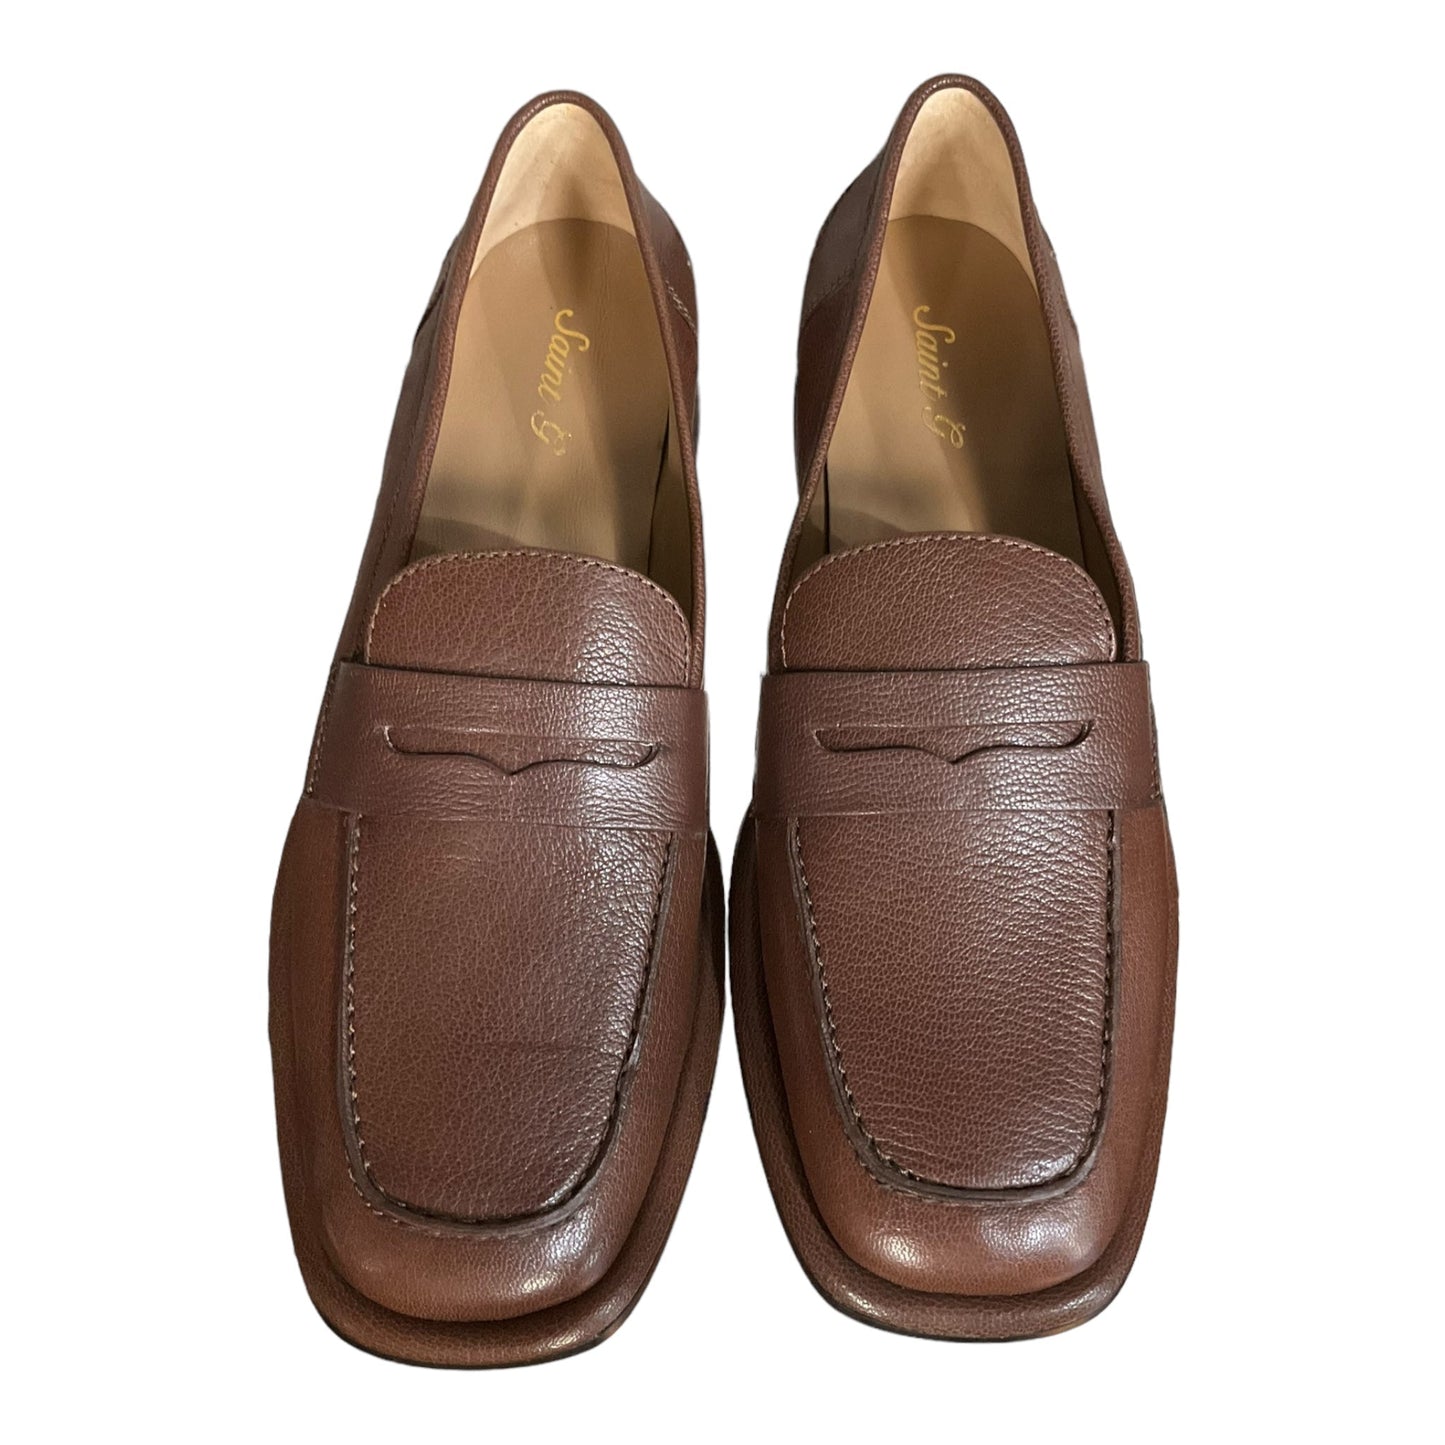 Brown Shoes Flats Saint Germain, Size 8.5